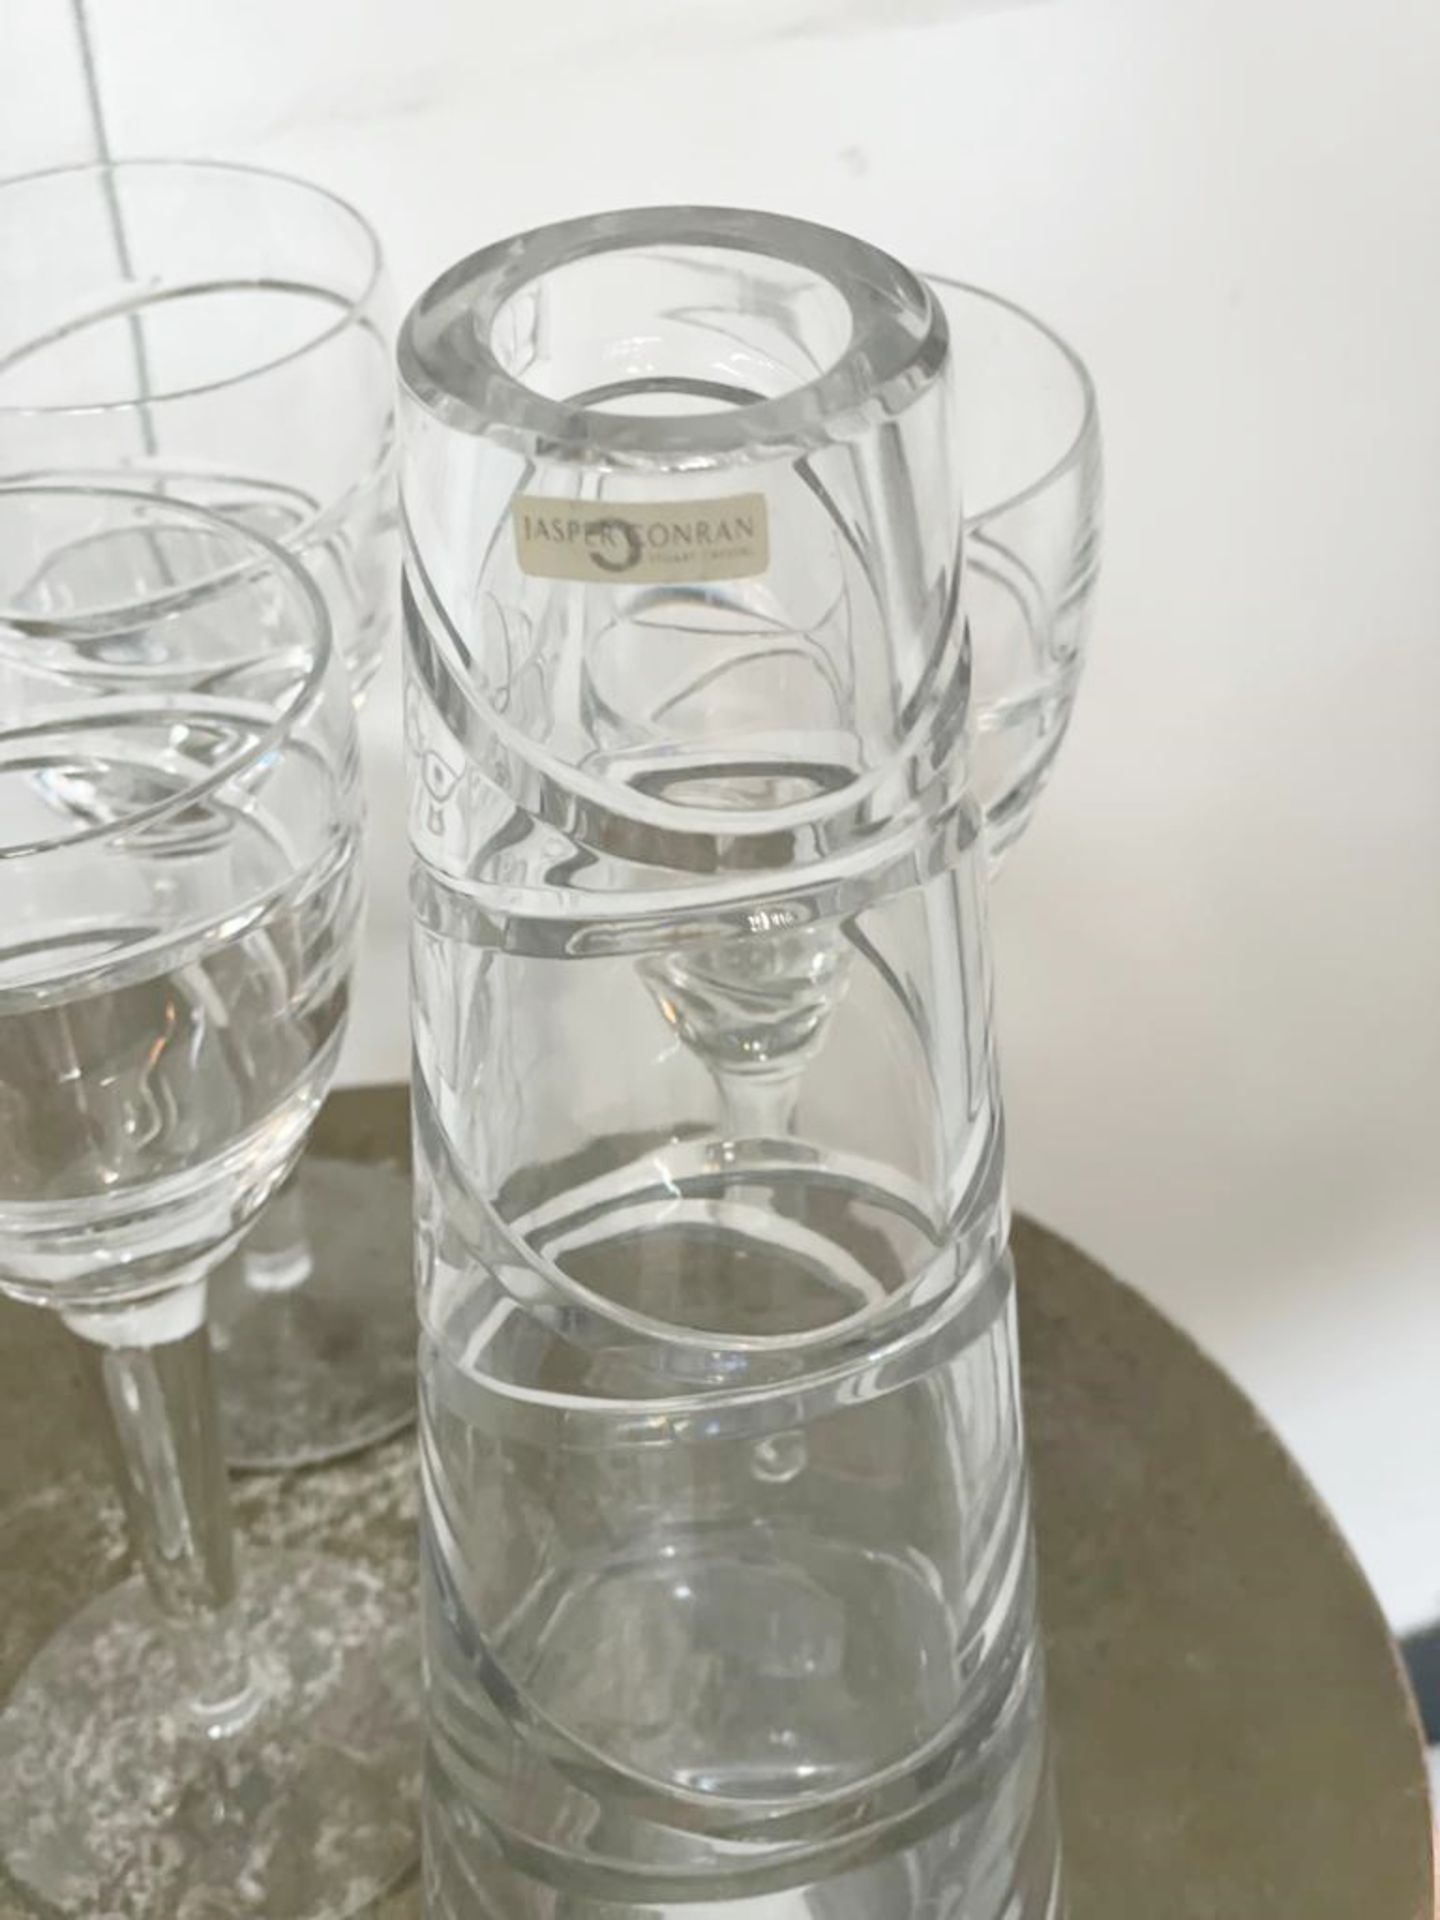 1 x Jasper Conran Glass Collection  - Ref: AUR153 - CL652 - Location: Altrincham WA14 - Image 2 of 2